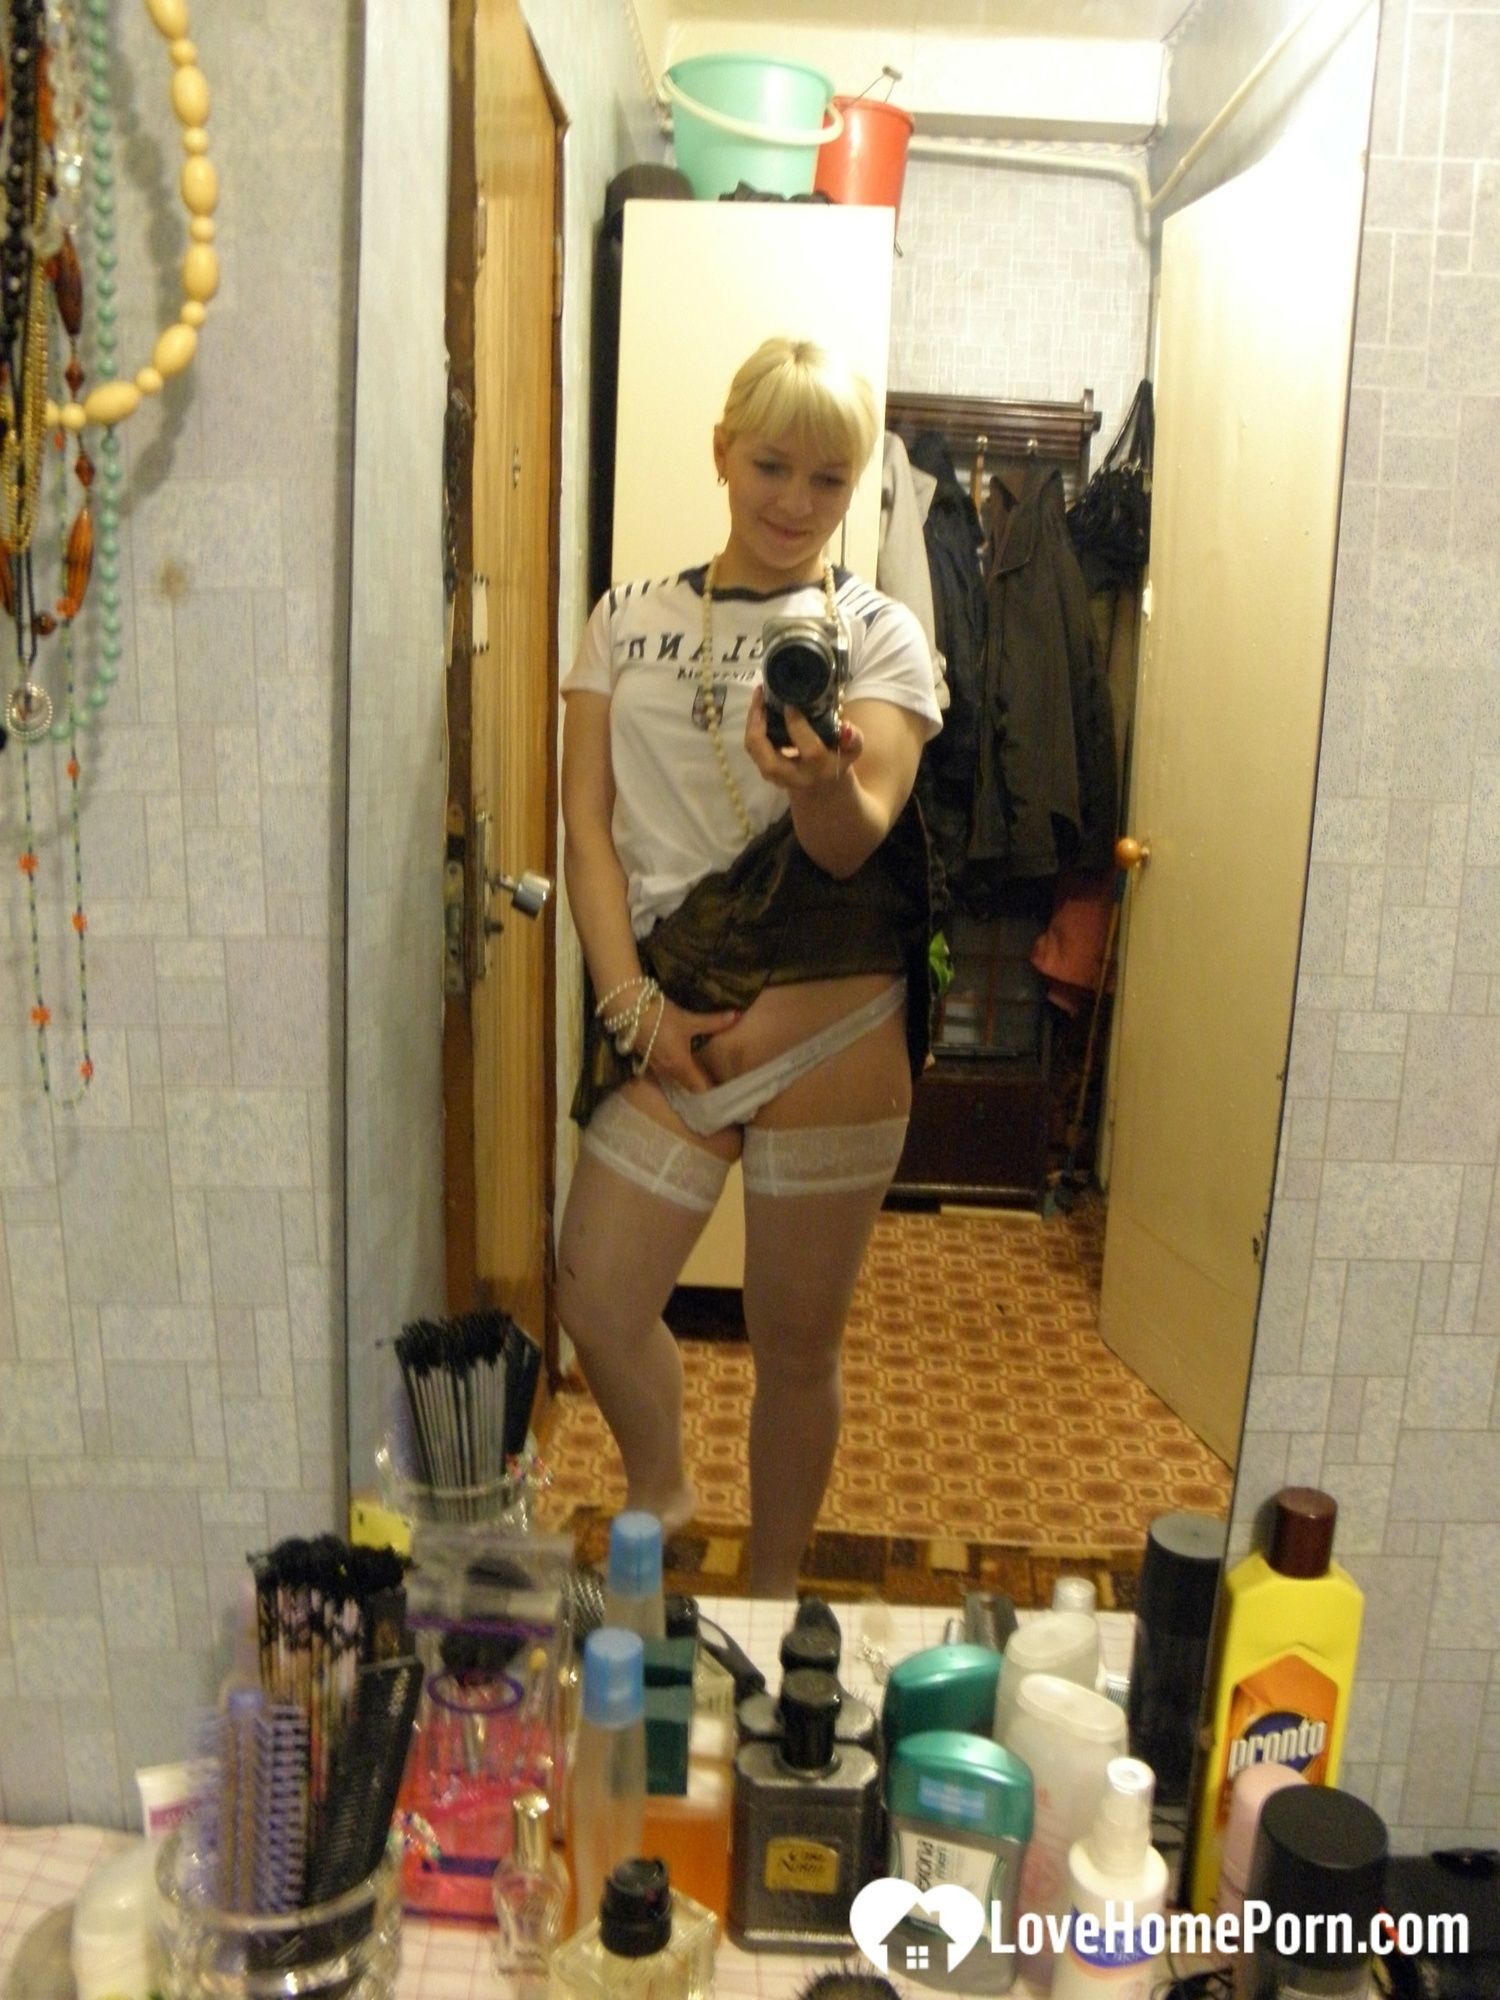 Aroused blonde in stockings taking naughty selfies #10